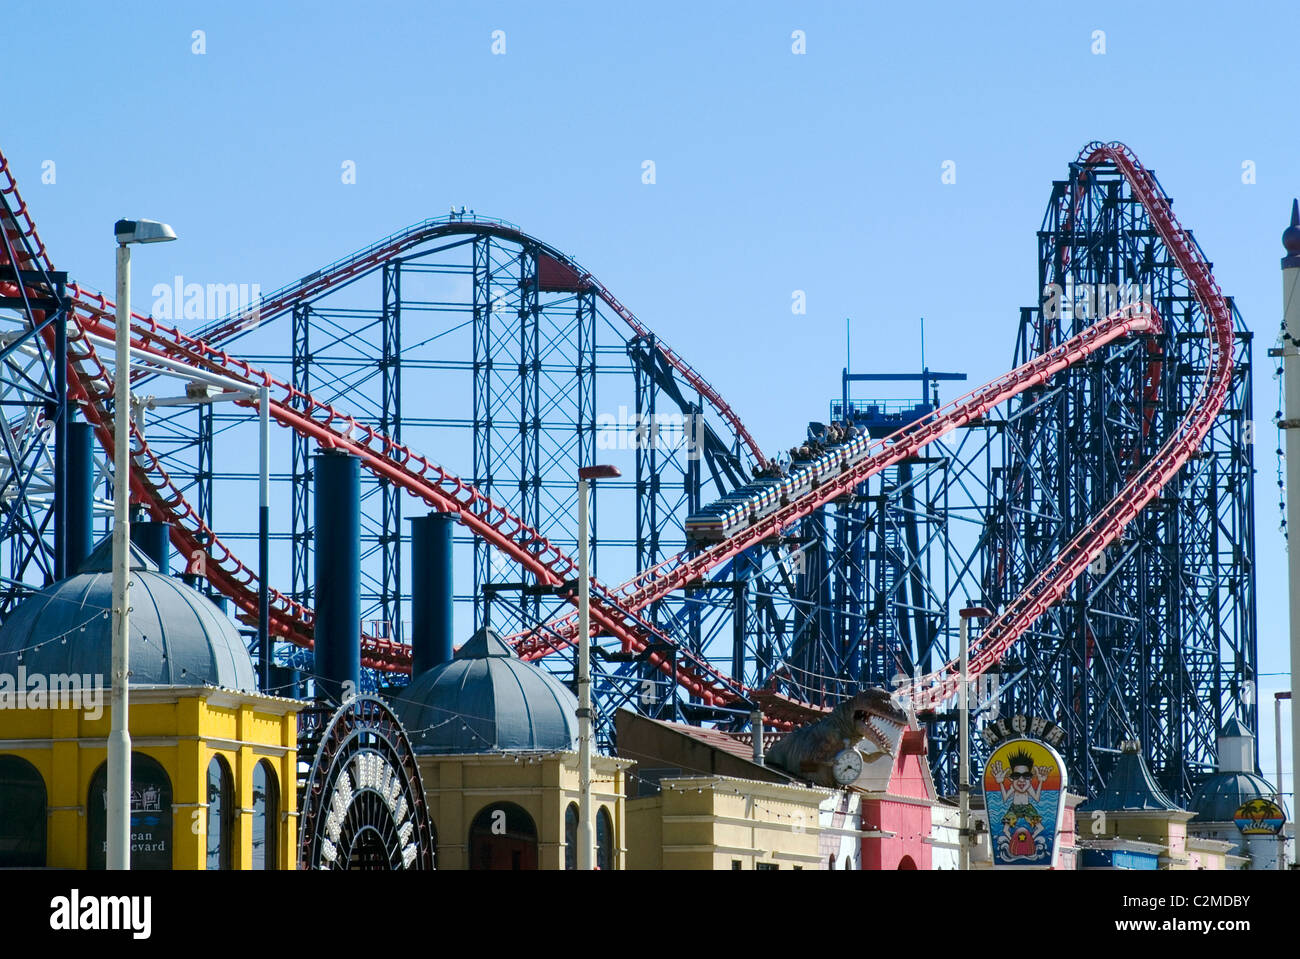 La Big One, il 235ft roller coaster (più grande d'Europa) a Pleasure Beach di Blackpool, Inghilterra. Foto Stock